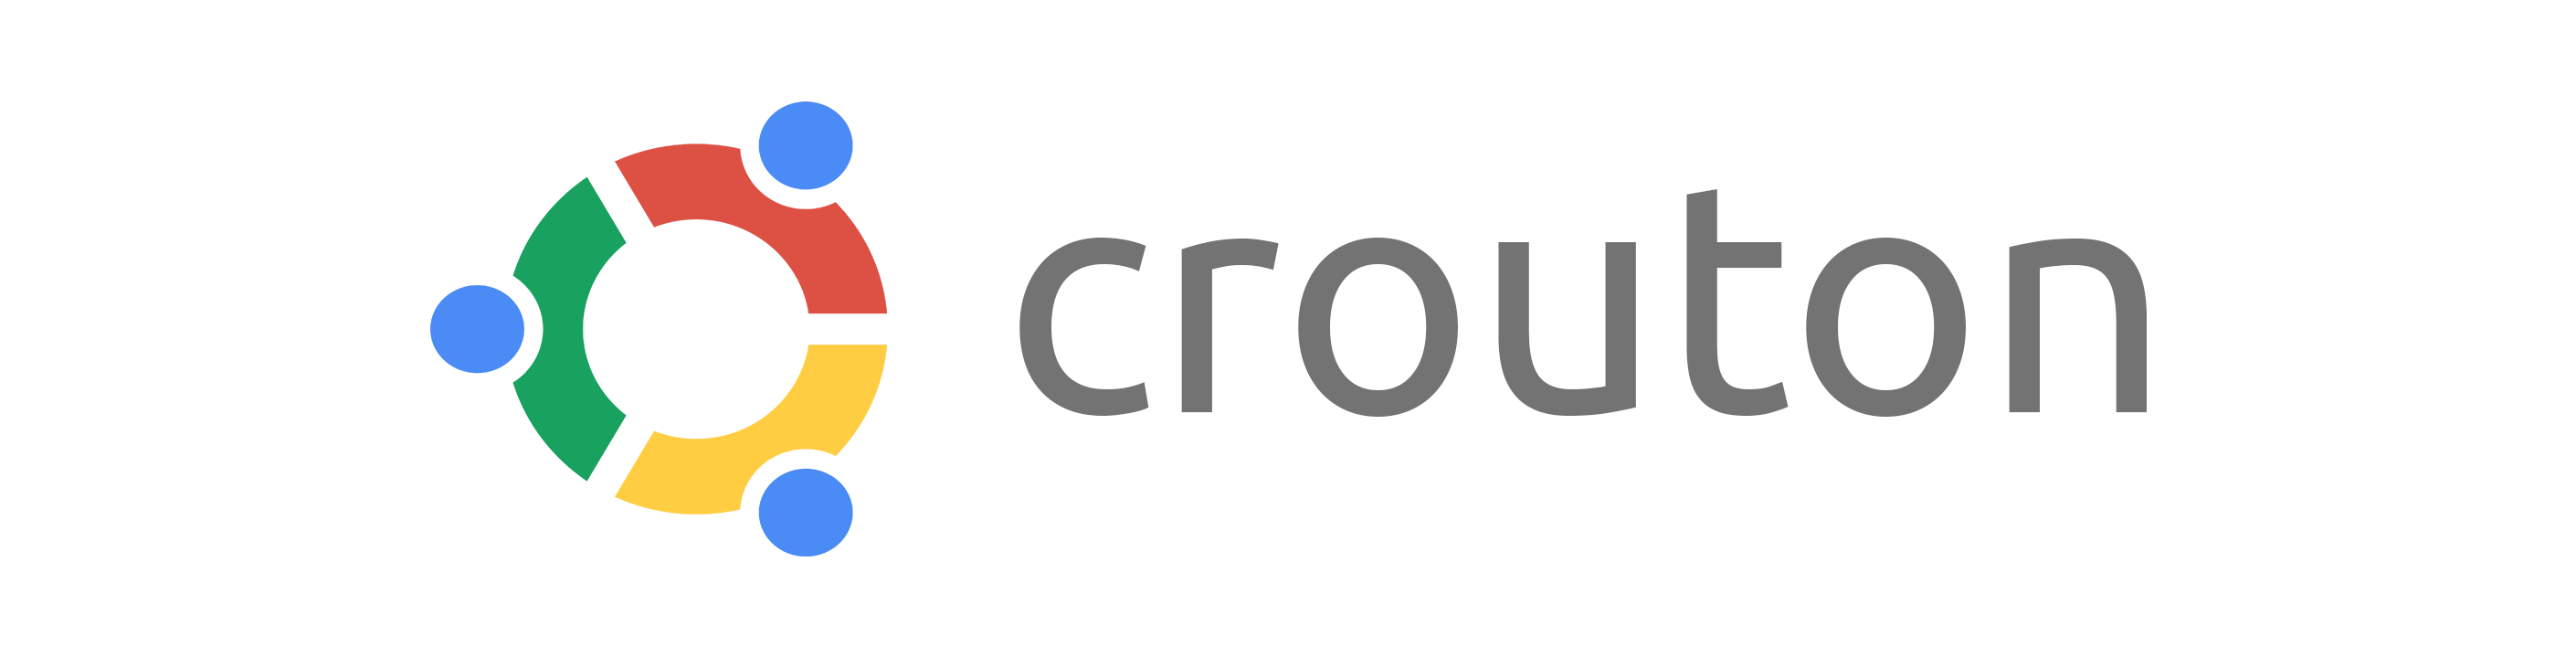 crouton chromeos